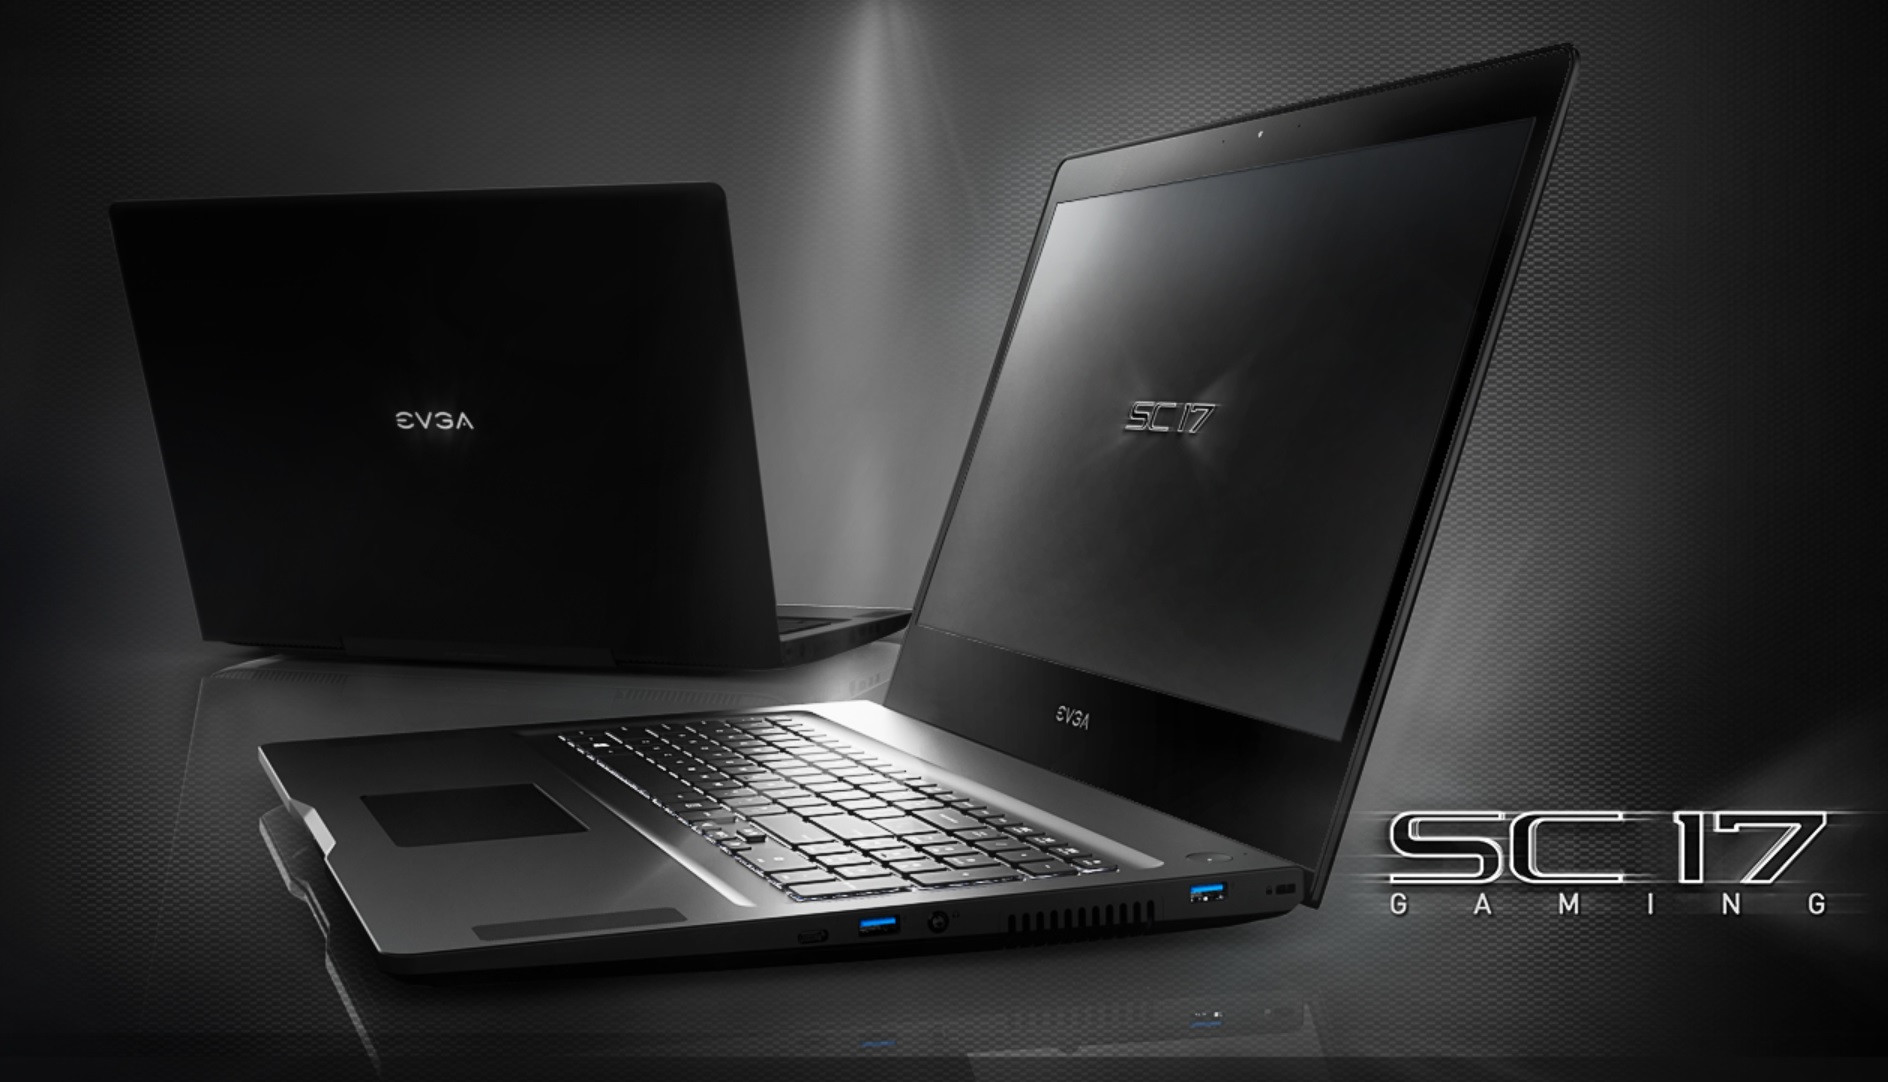 Игровой ноутбук EVGA SC17 Gaming обойдется в $2700